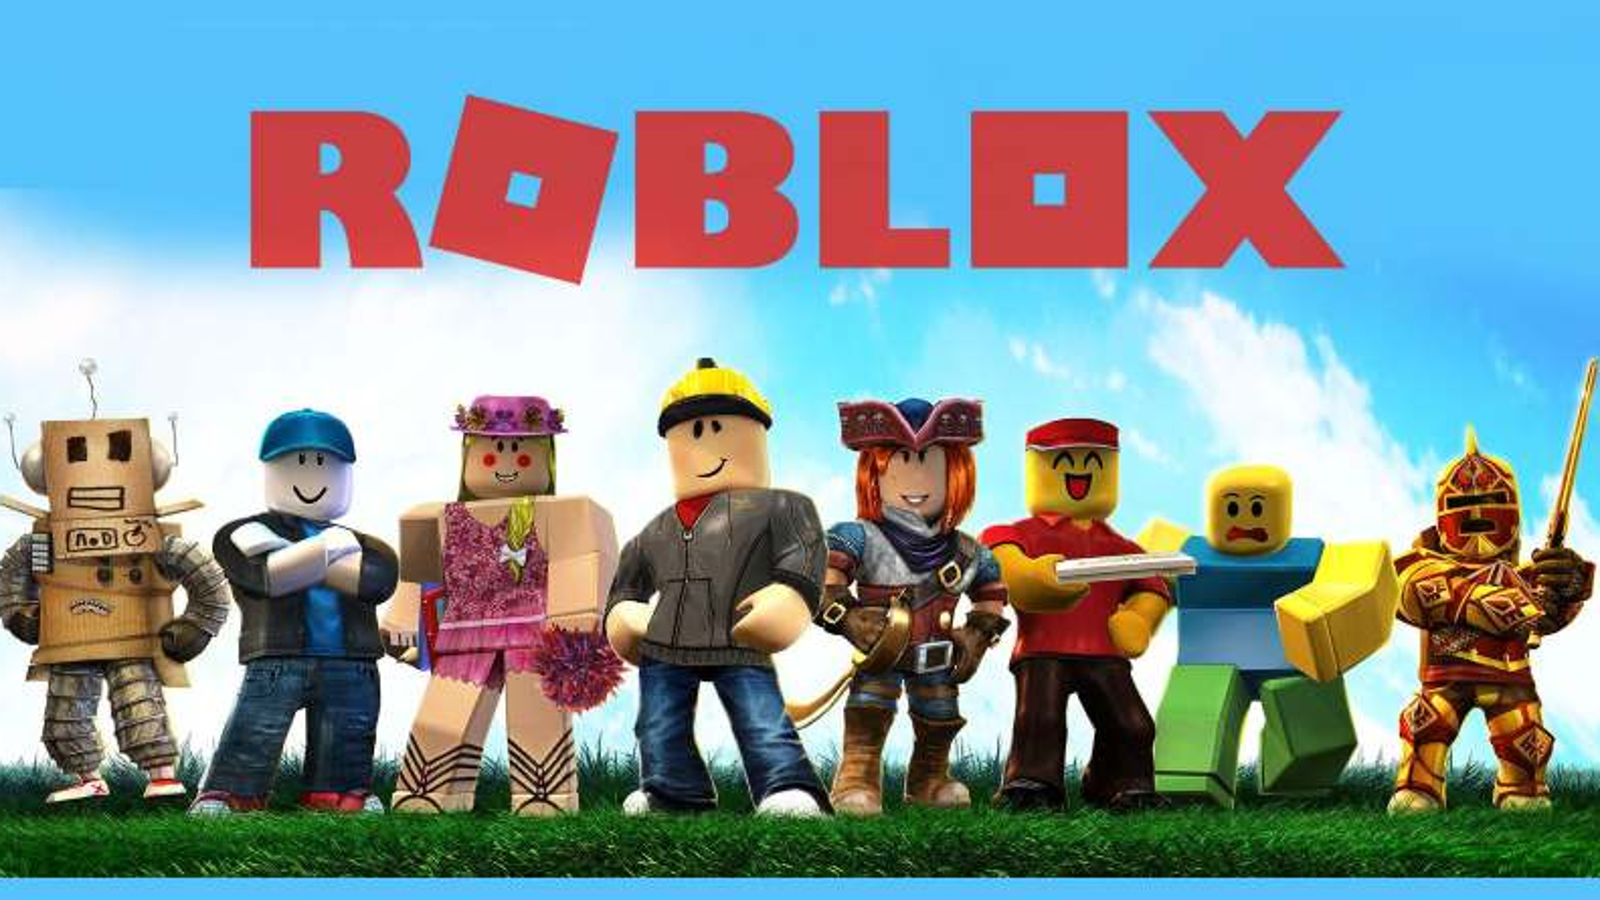 Roblox permite hacks? Veja práticas proibidas na plataformas de games